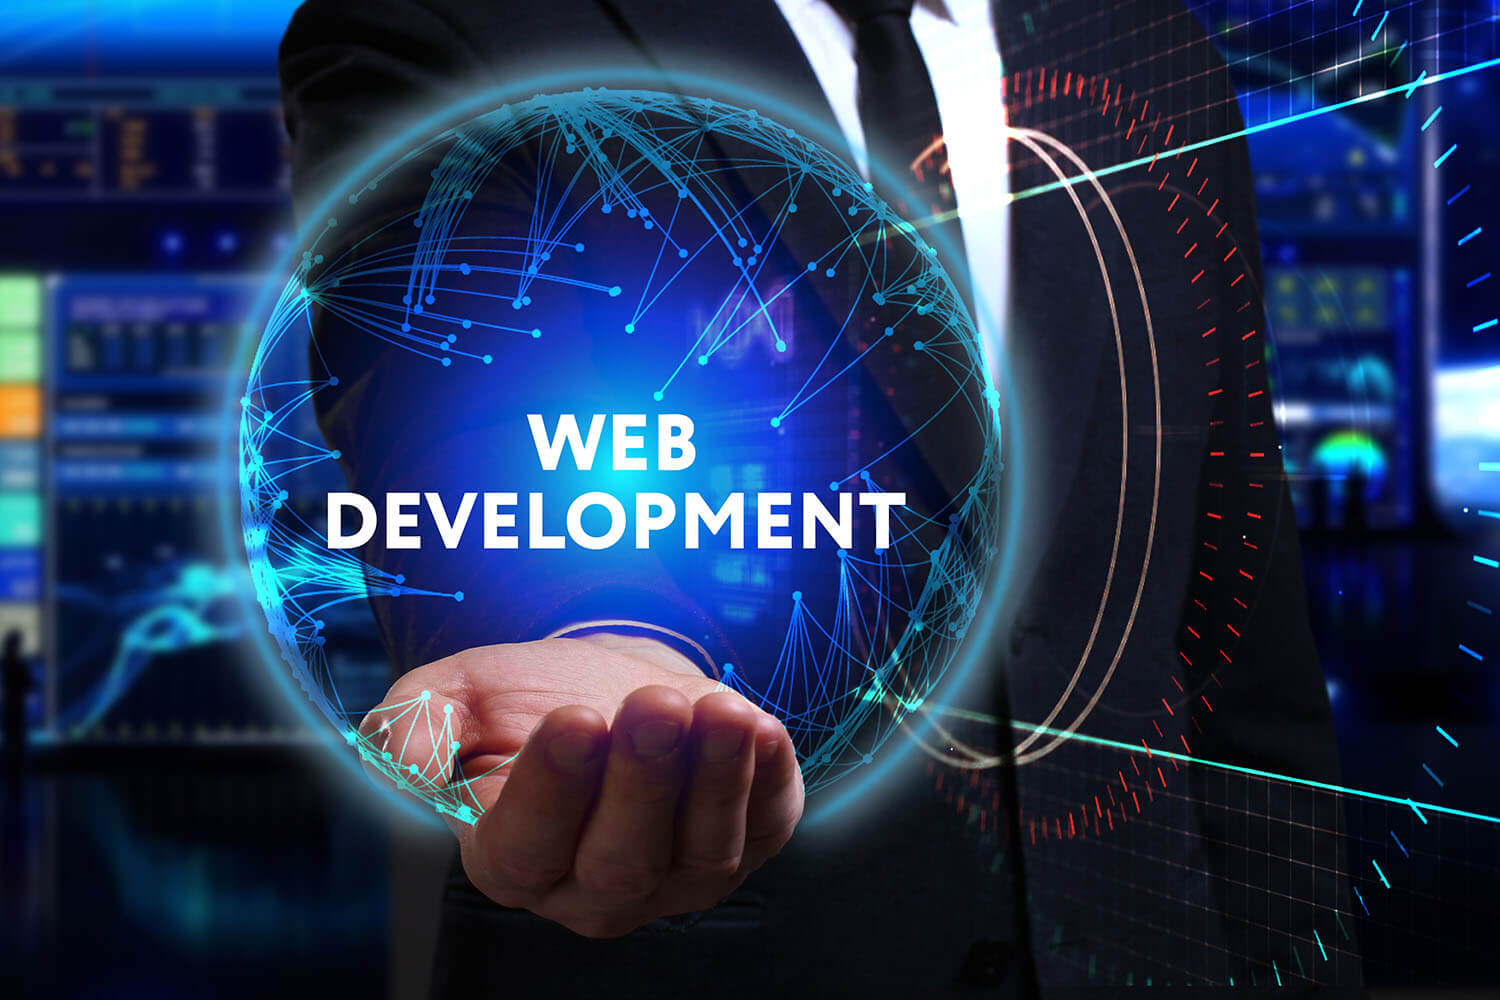 WebApp Development